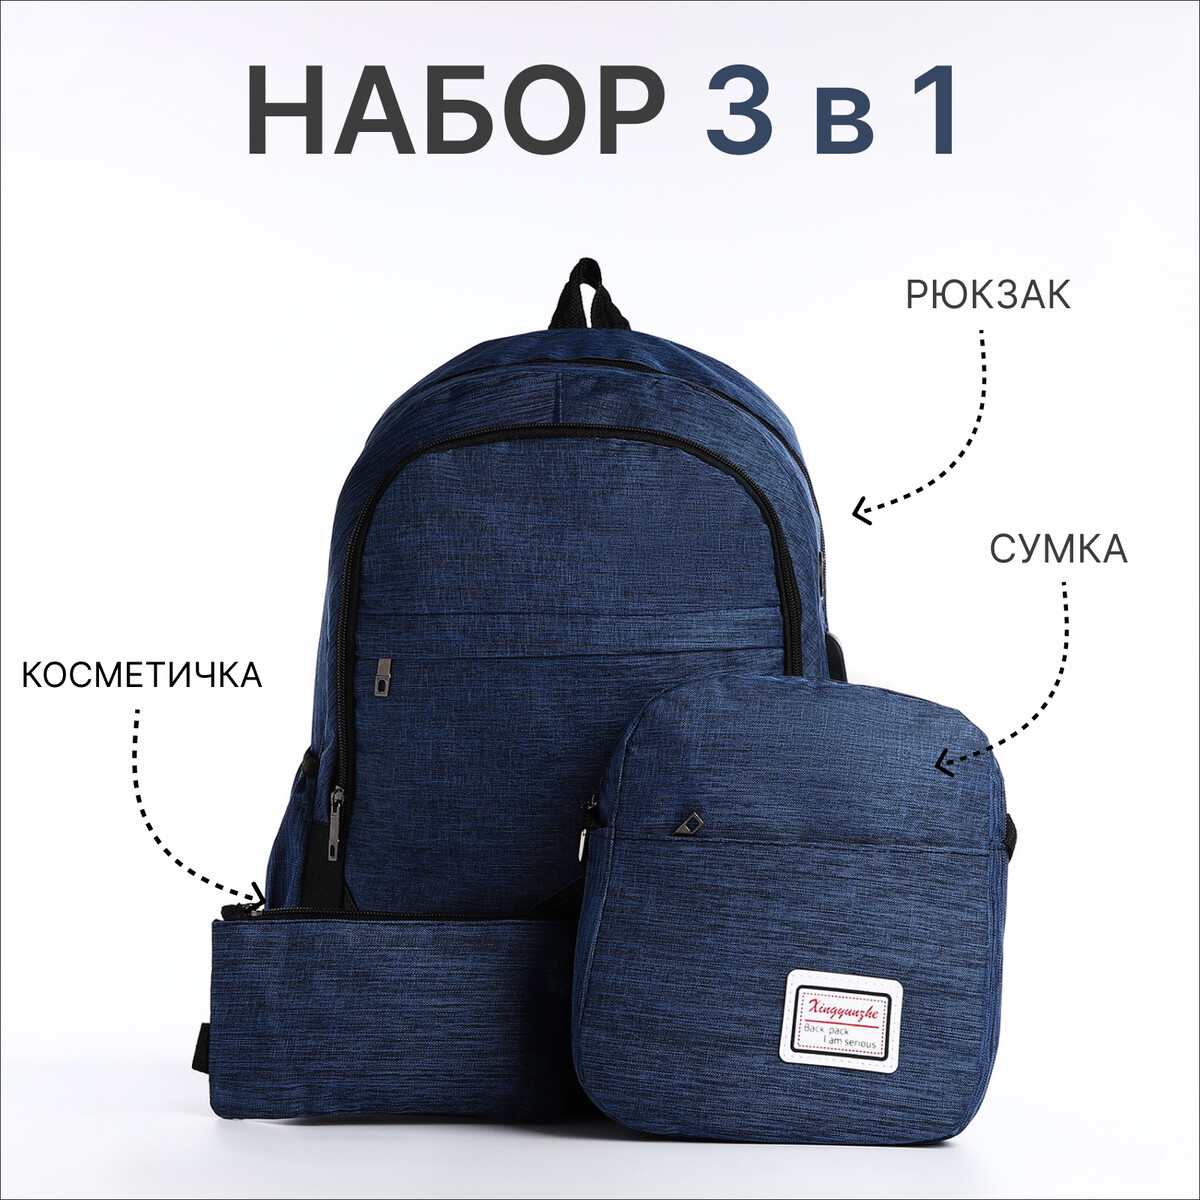 Рюкзак на молнии, с usb, 4 наружных кармана, сумка, пенал, цвет синий